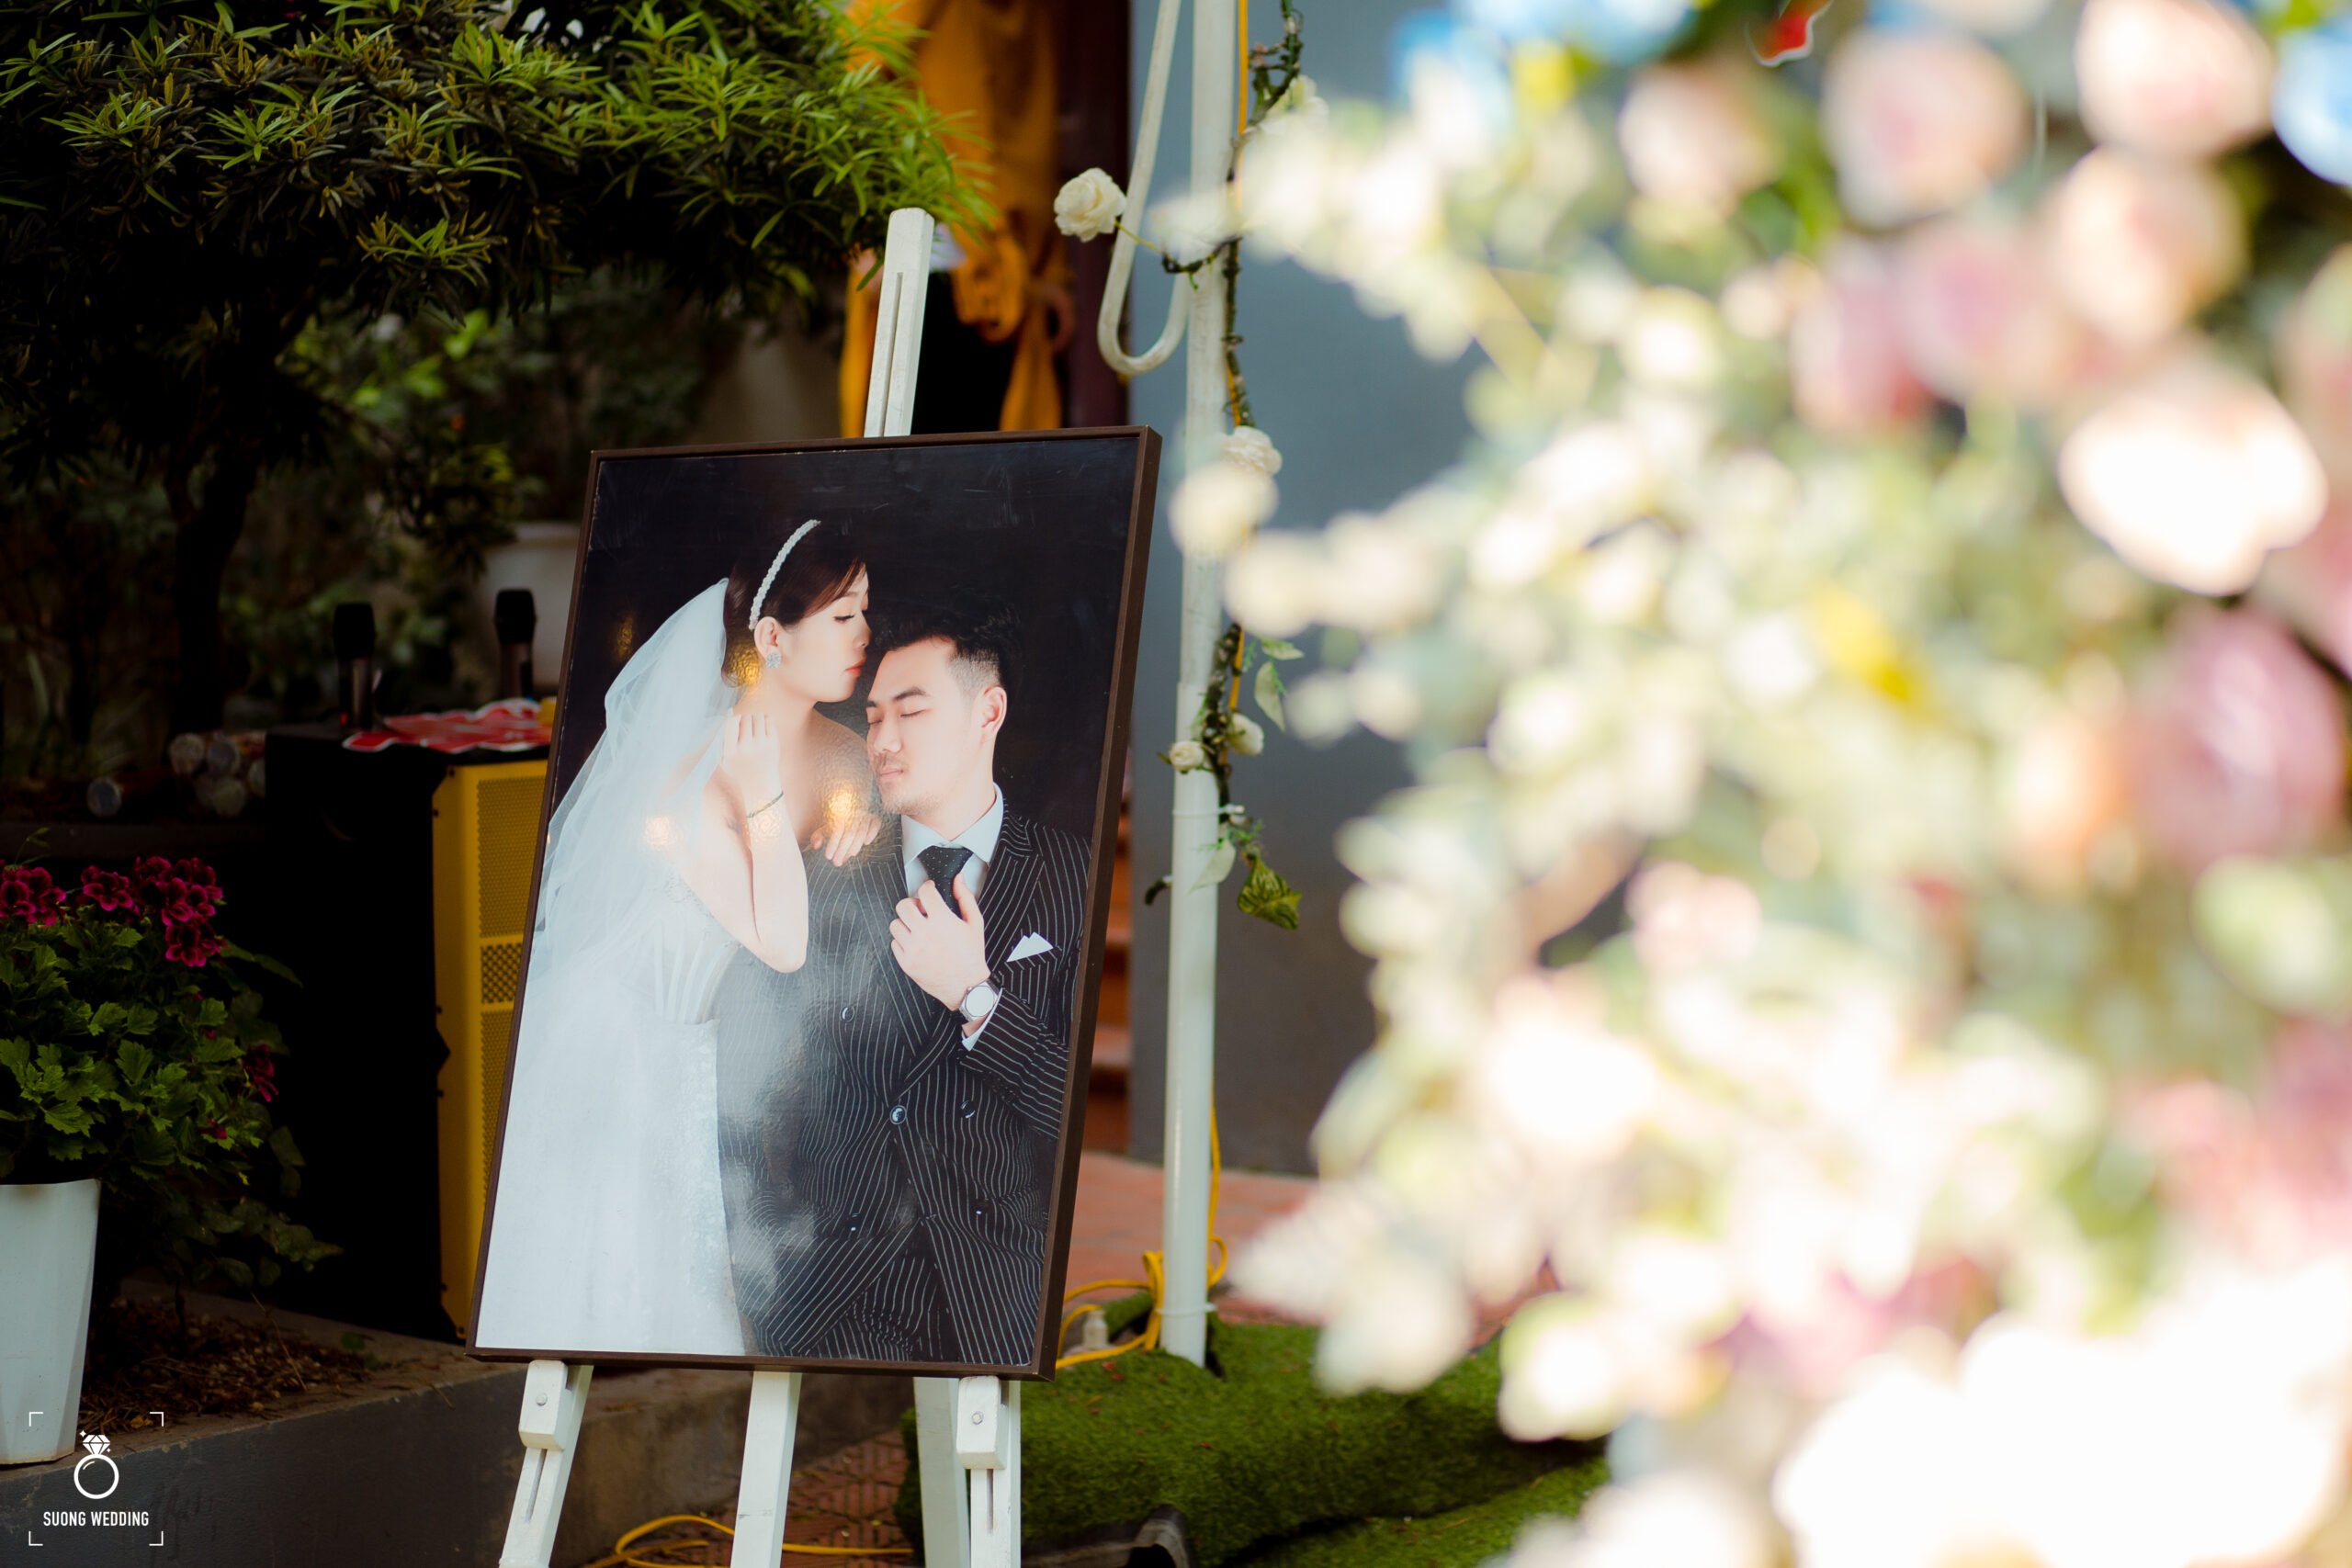 Chụp hình phóng sự cưới - Phong cách chụp hình mới lạ cho các cặp đôi